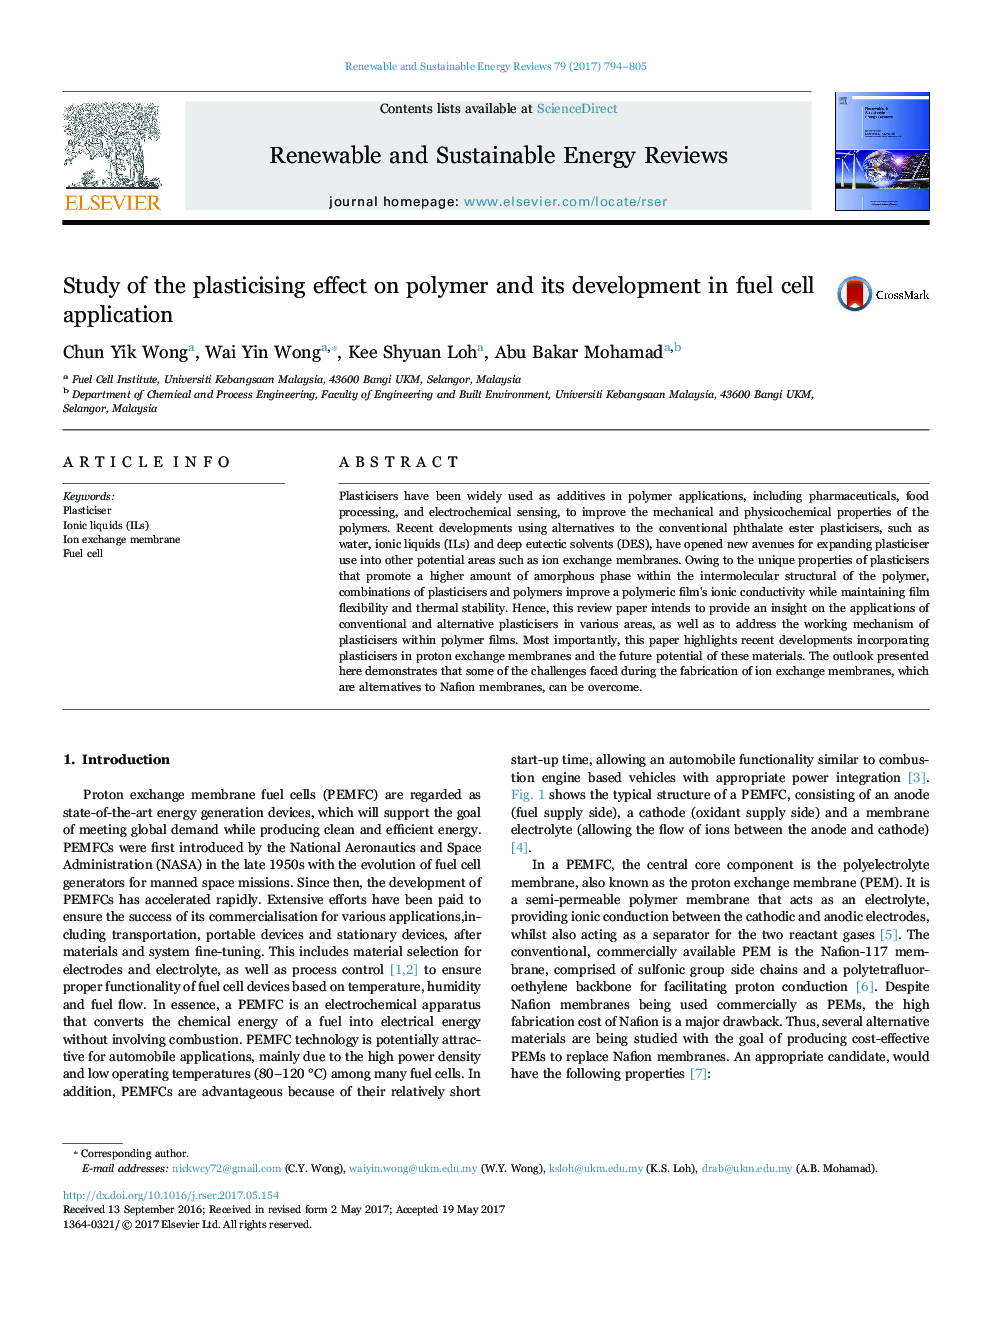 بررسی اثر پلاستیک بر روی پلیمر و توسعه آن در کاربرد سلول سوختی 